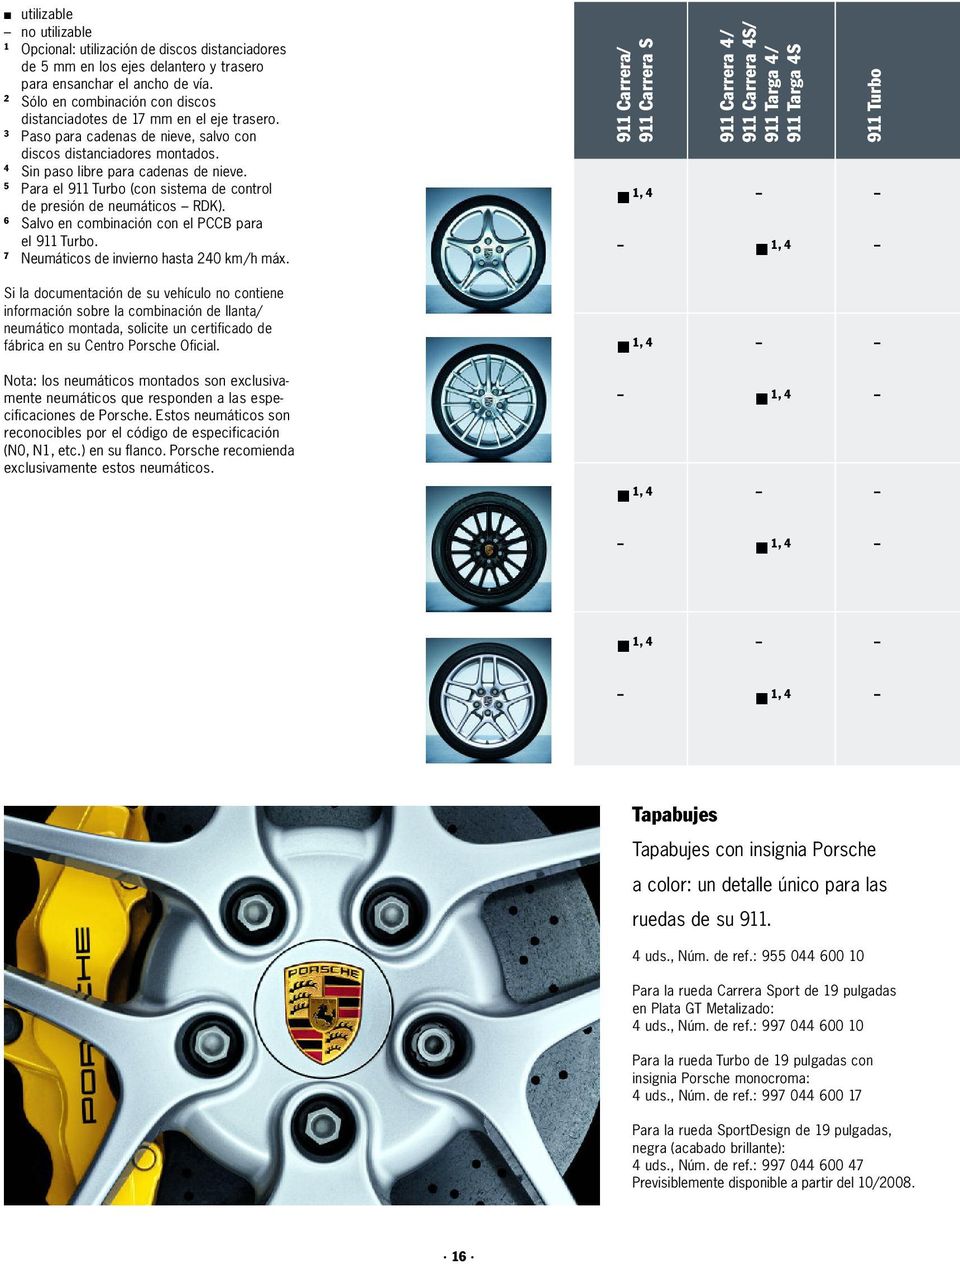 5 Para el 911 Turbo (con sistema de control de presión de neumáticos RDK). 6 Salvo en combinación con el PCCB para el 911 Turbo. 7 Neumáticos de invierno hasta 240 km/h máx.